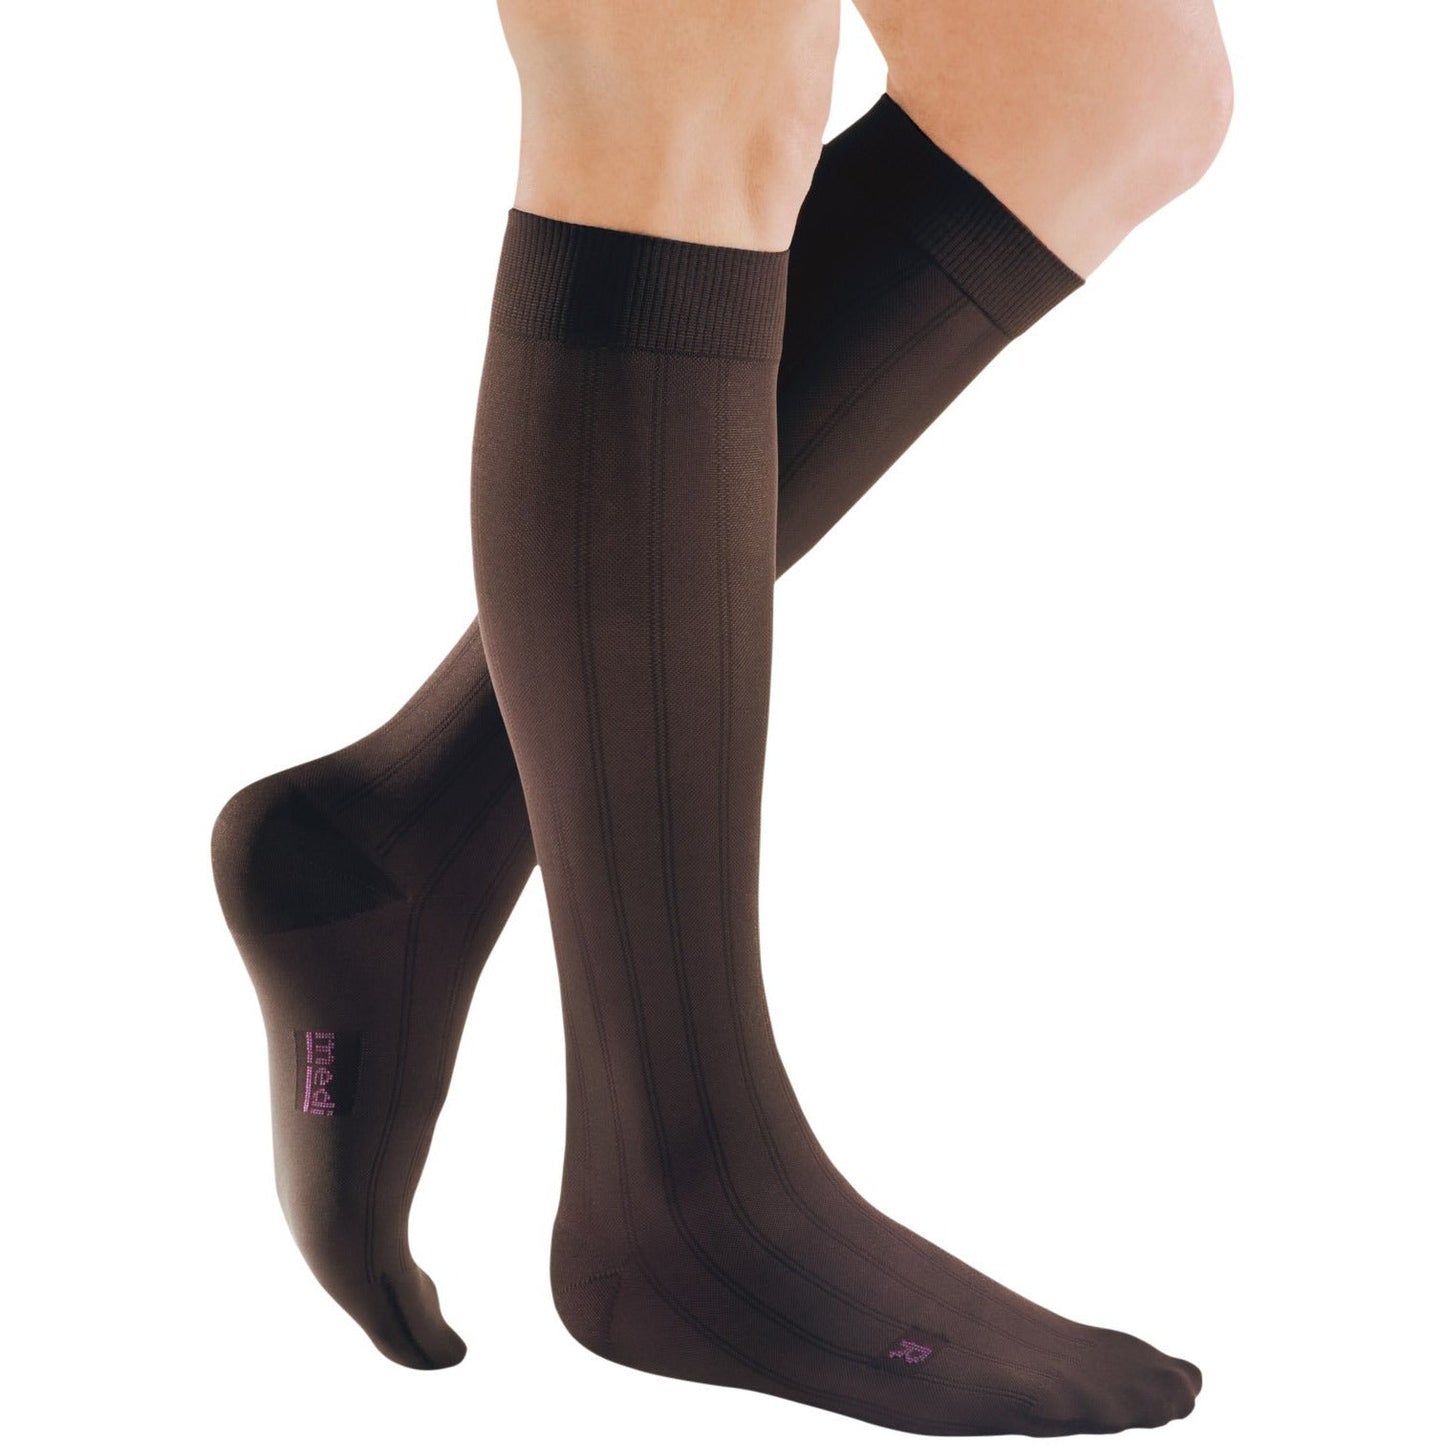 Mediven for Men Classic Knee High 15-20 mmHg [OVERSTOCK]